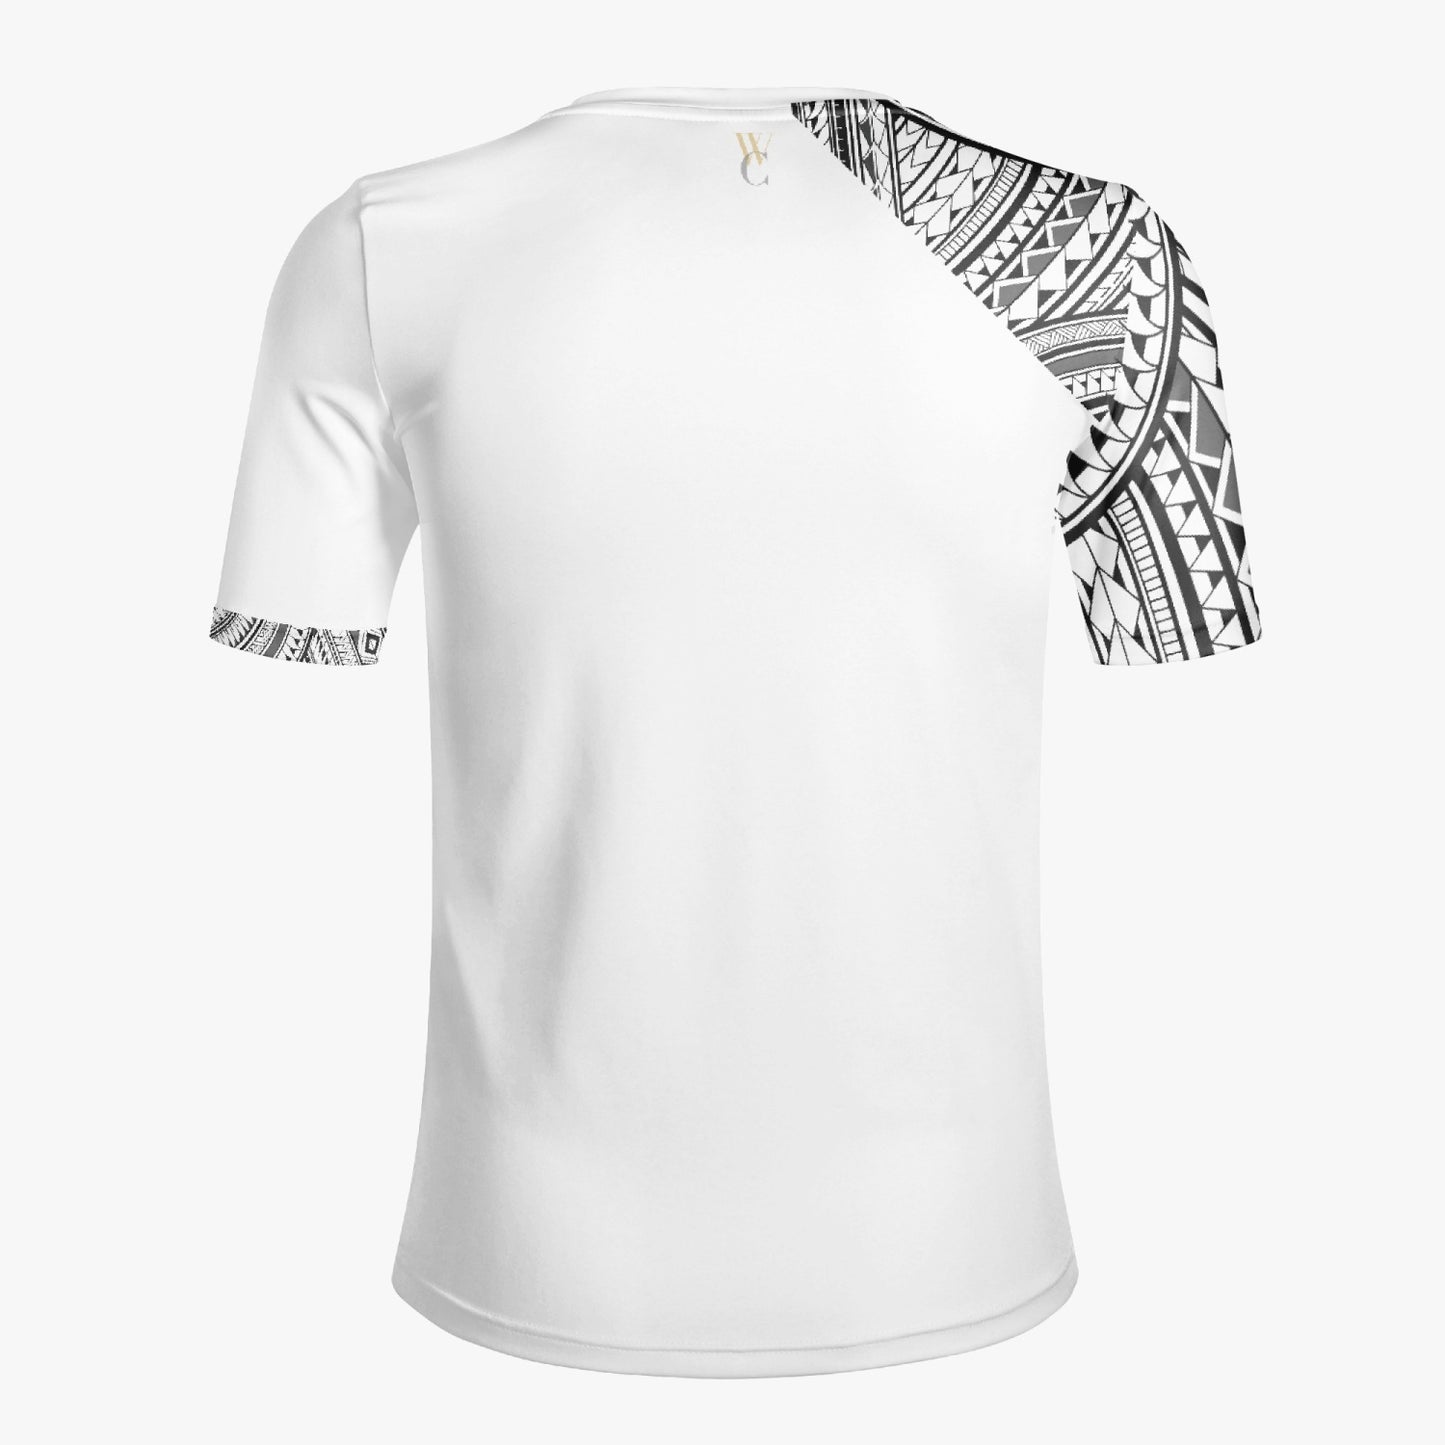 Sāmoa - T-shirt (Sleeve)